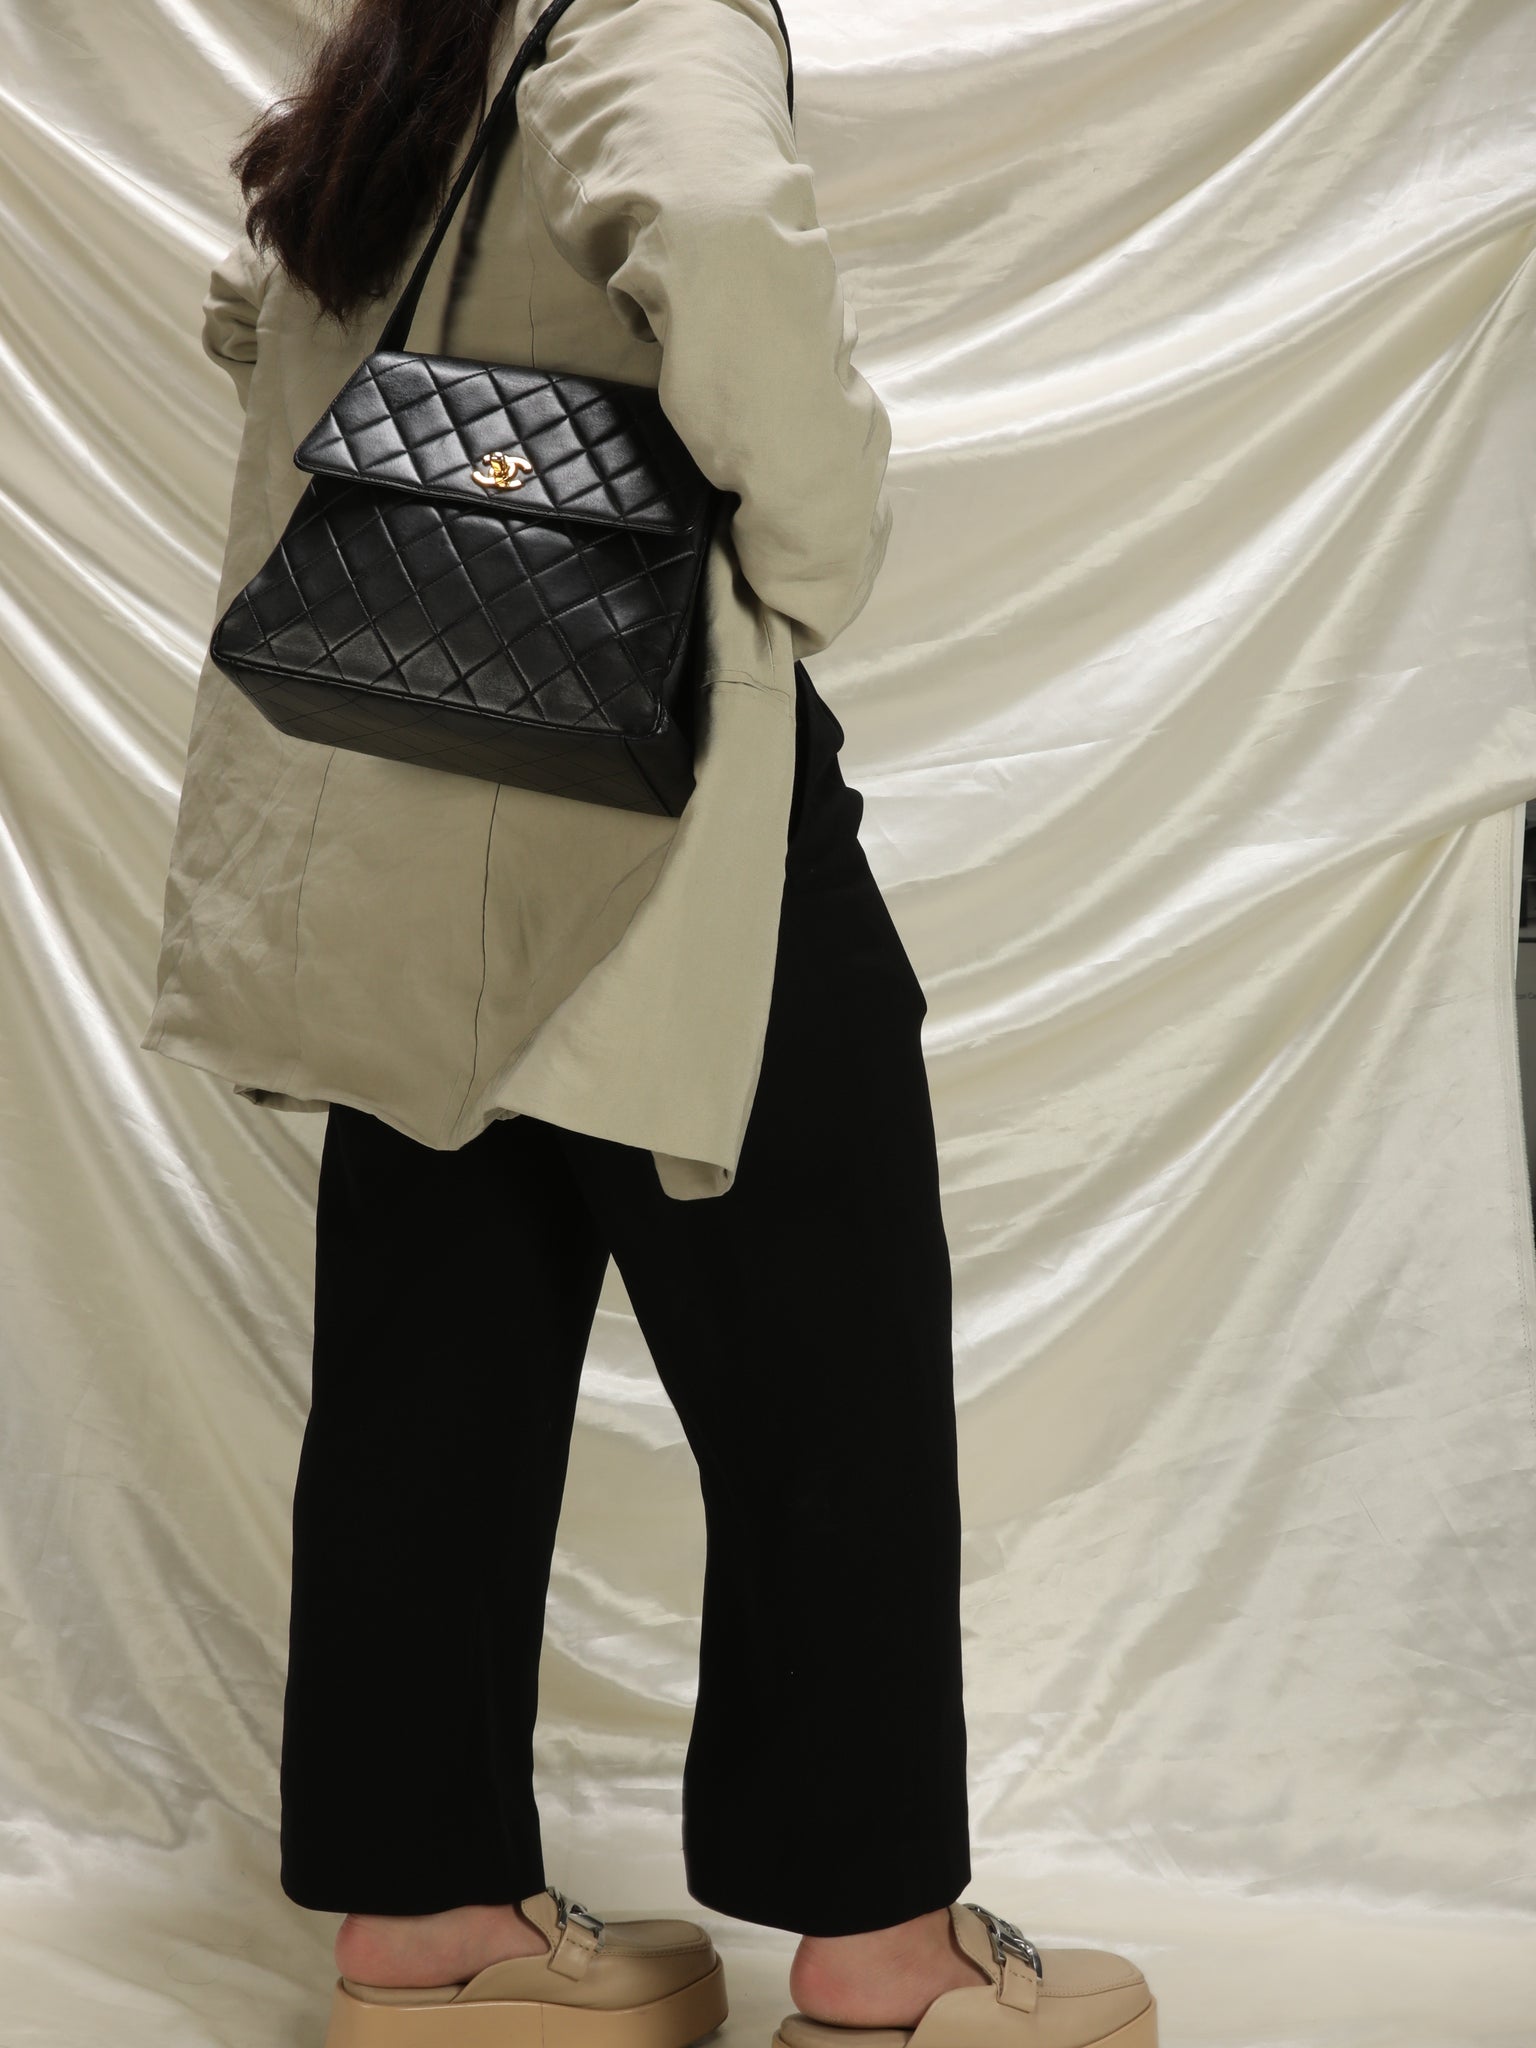 Chanel Lambskin Flap Shoulder Bag